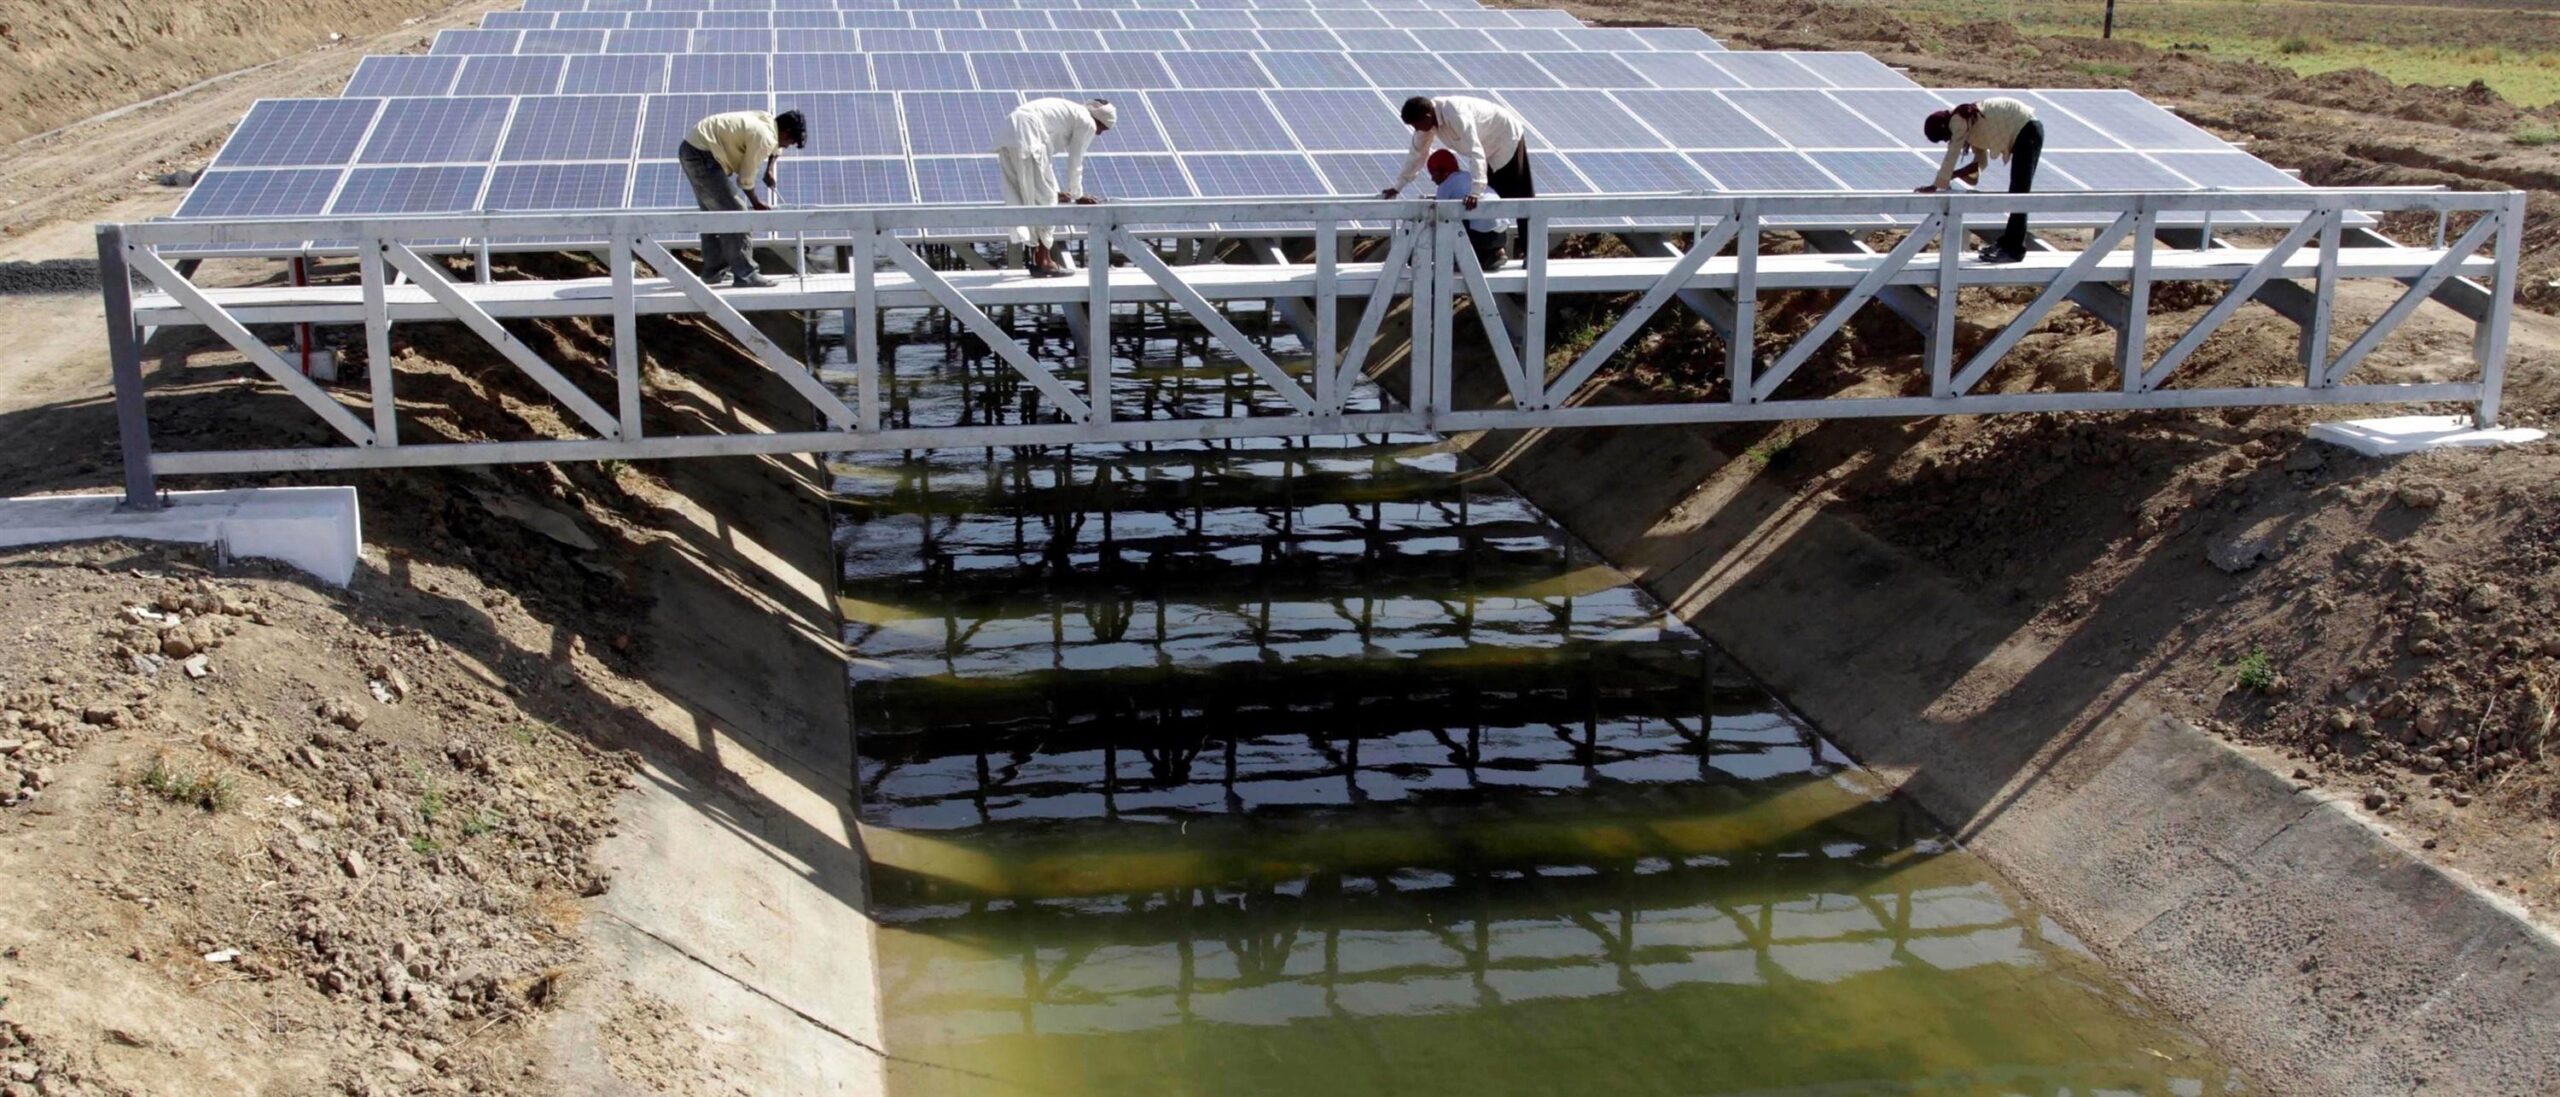 Su kanallarını güneş panelleriyle kaplamak kuraklığı önleyebilir